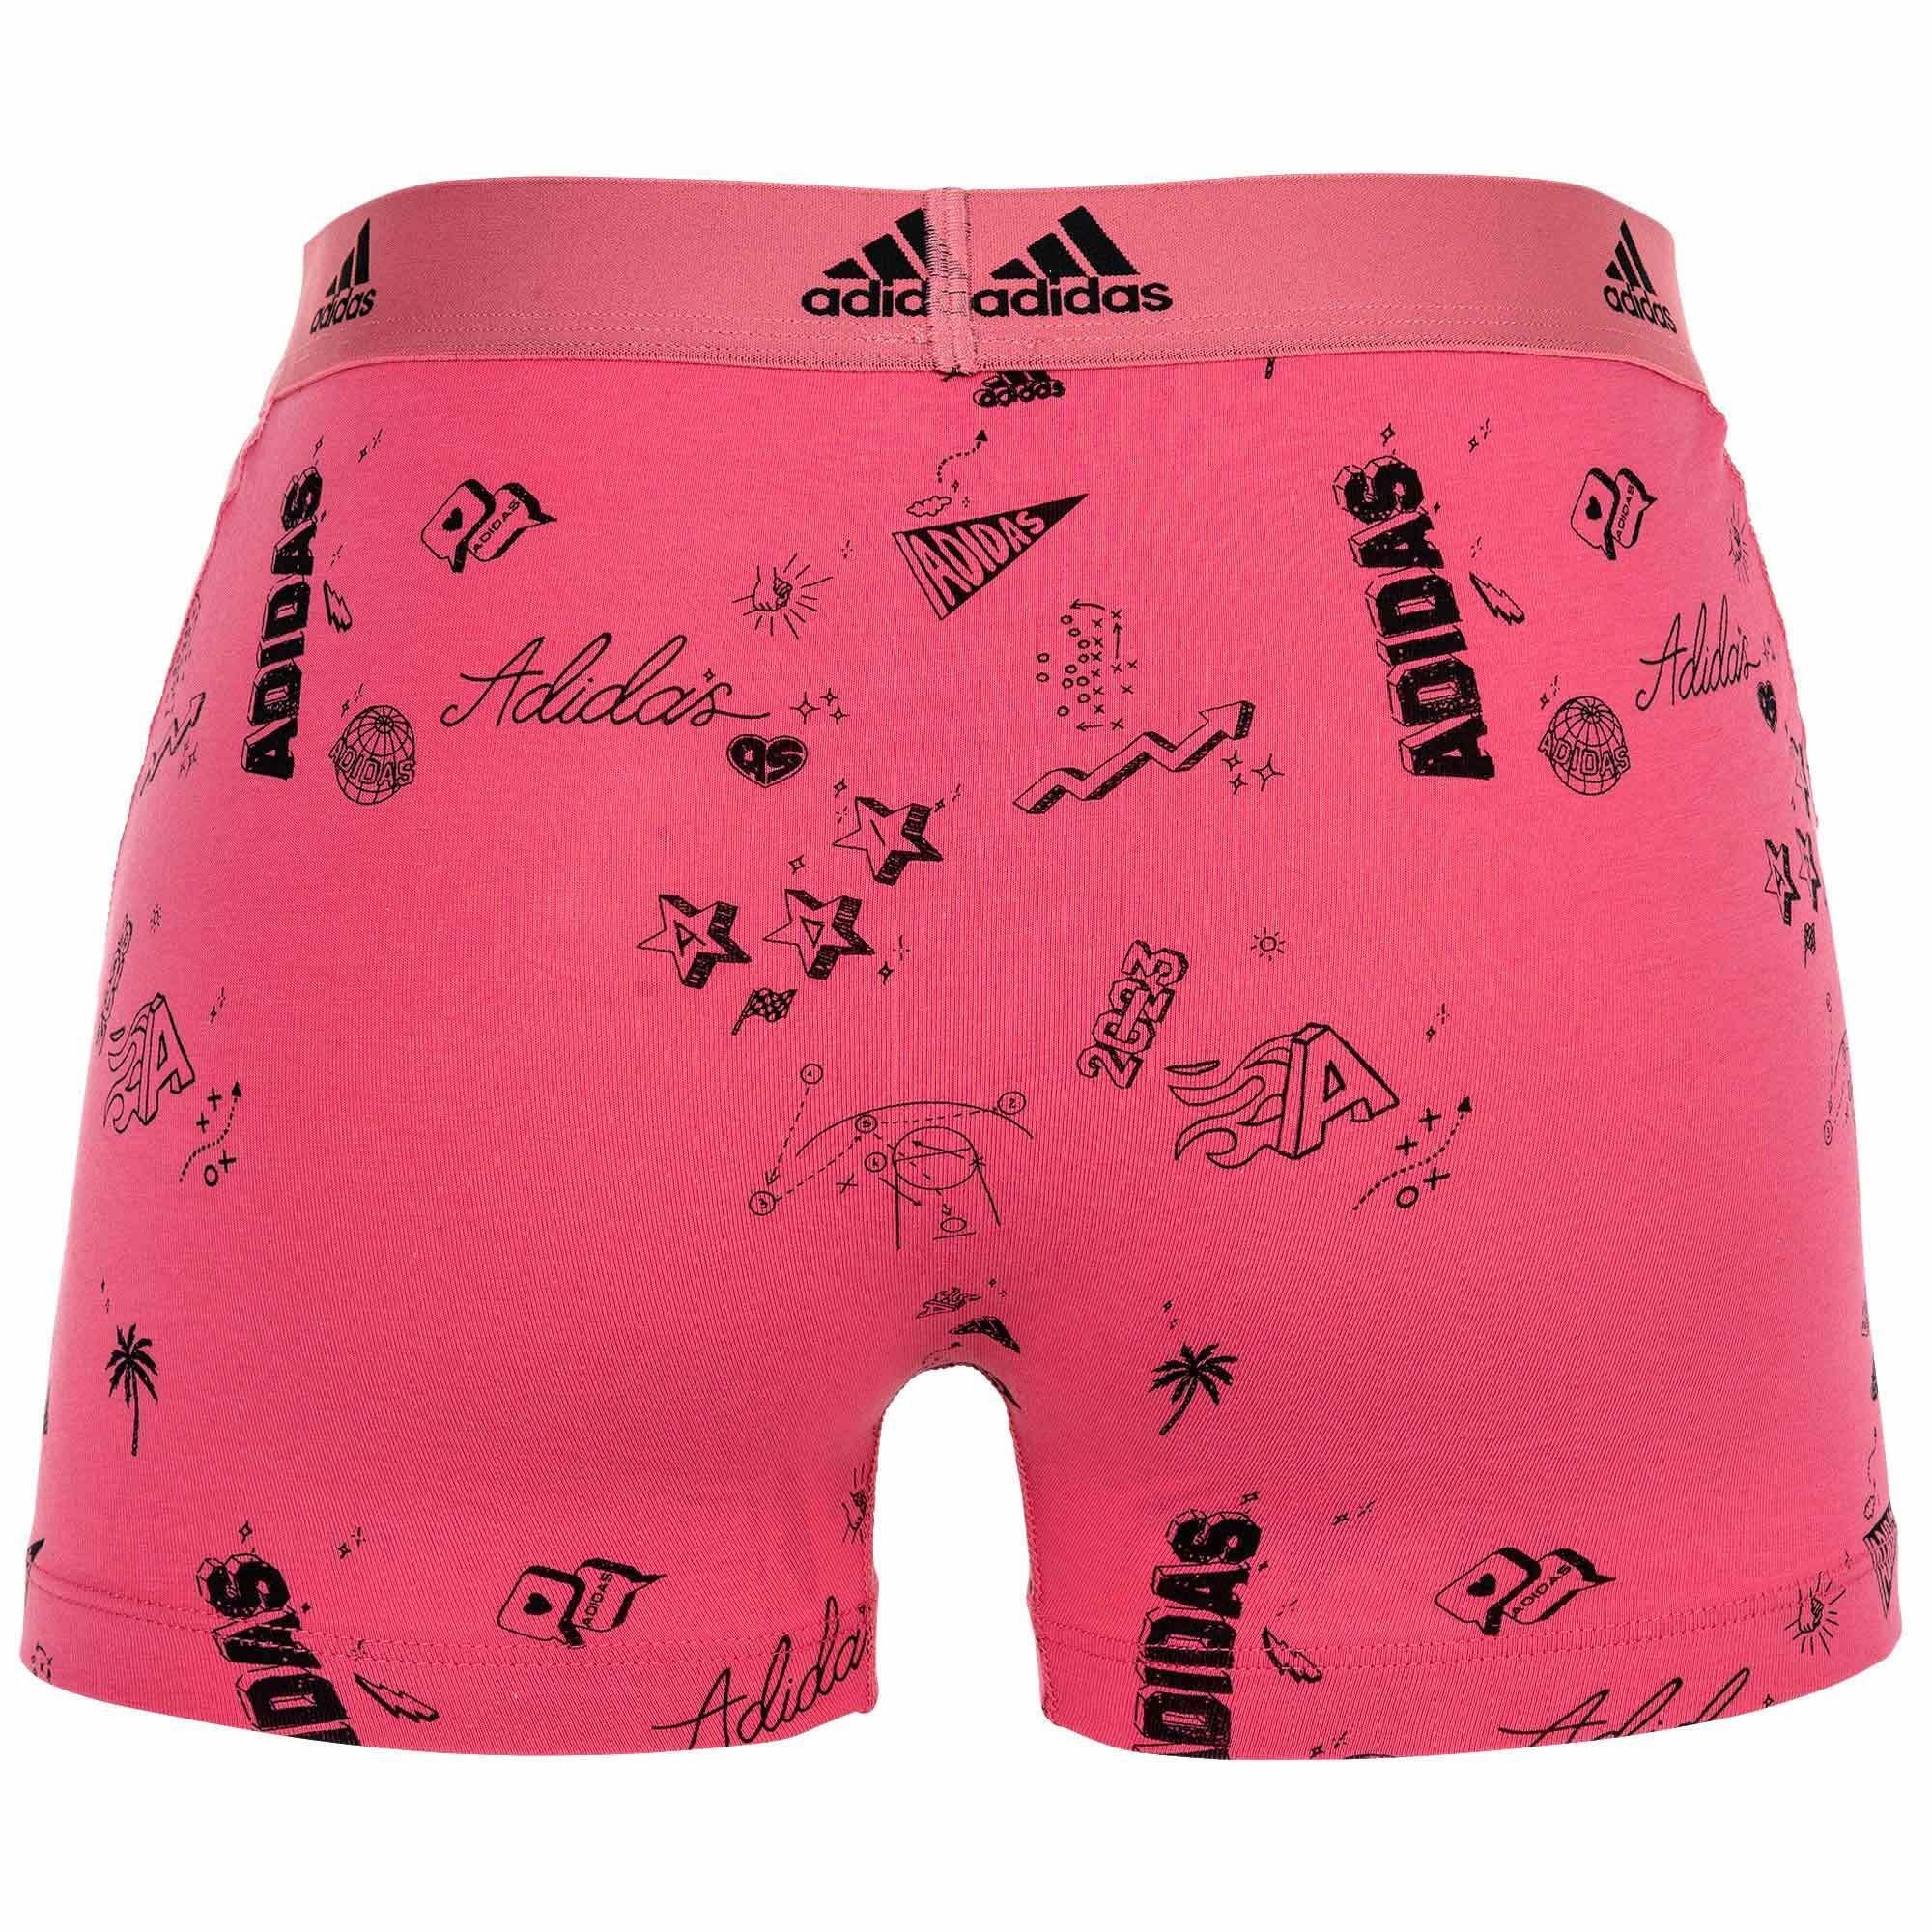 3er Herren Trunks, adidas - Sportswear Boxershorts, Pack Boxer Flex Active Schwarz/Pink